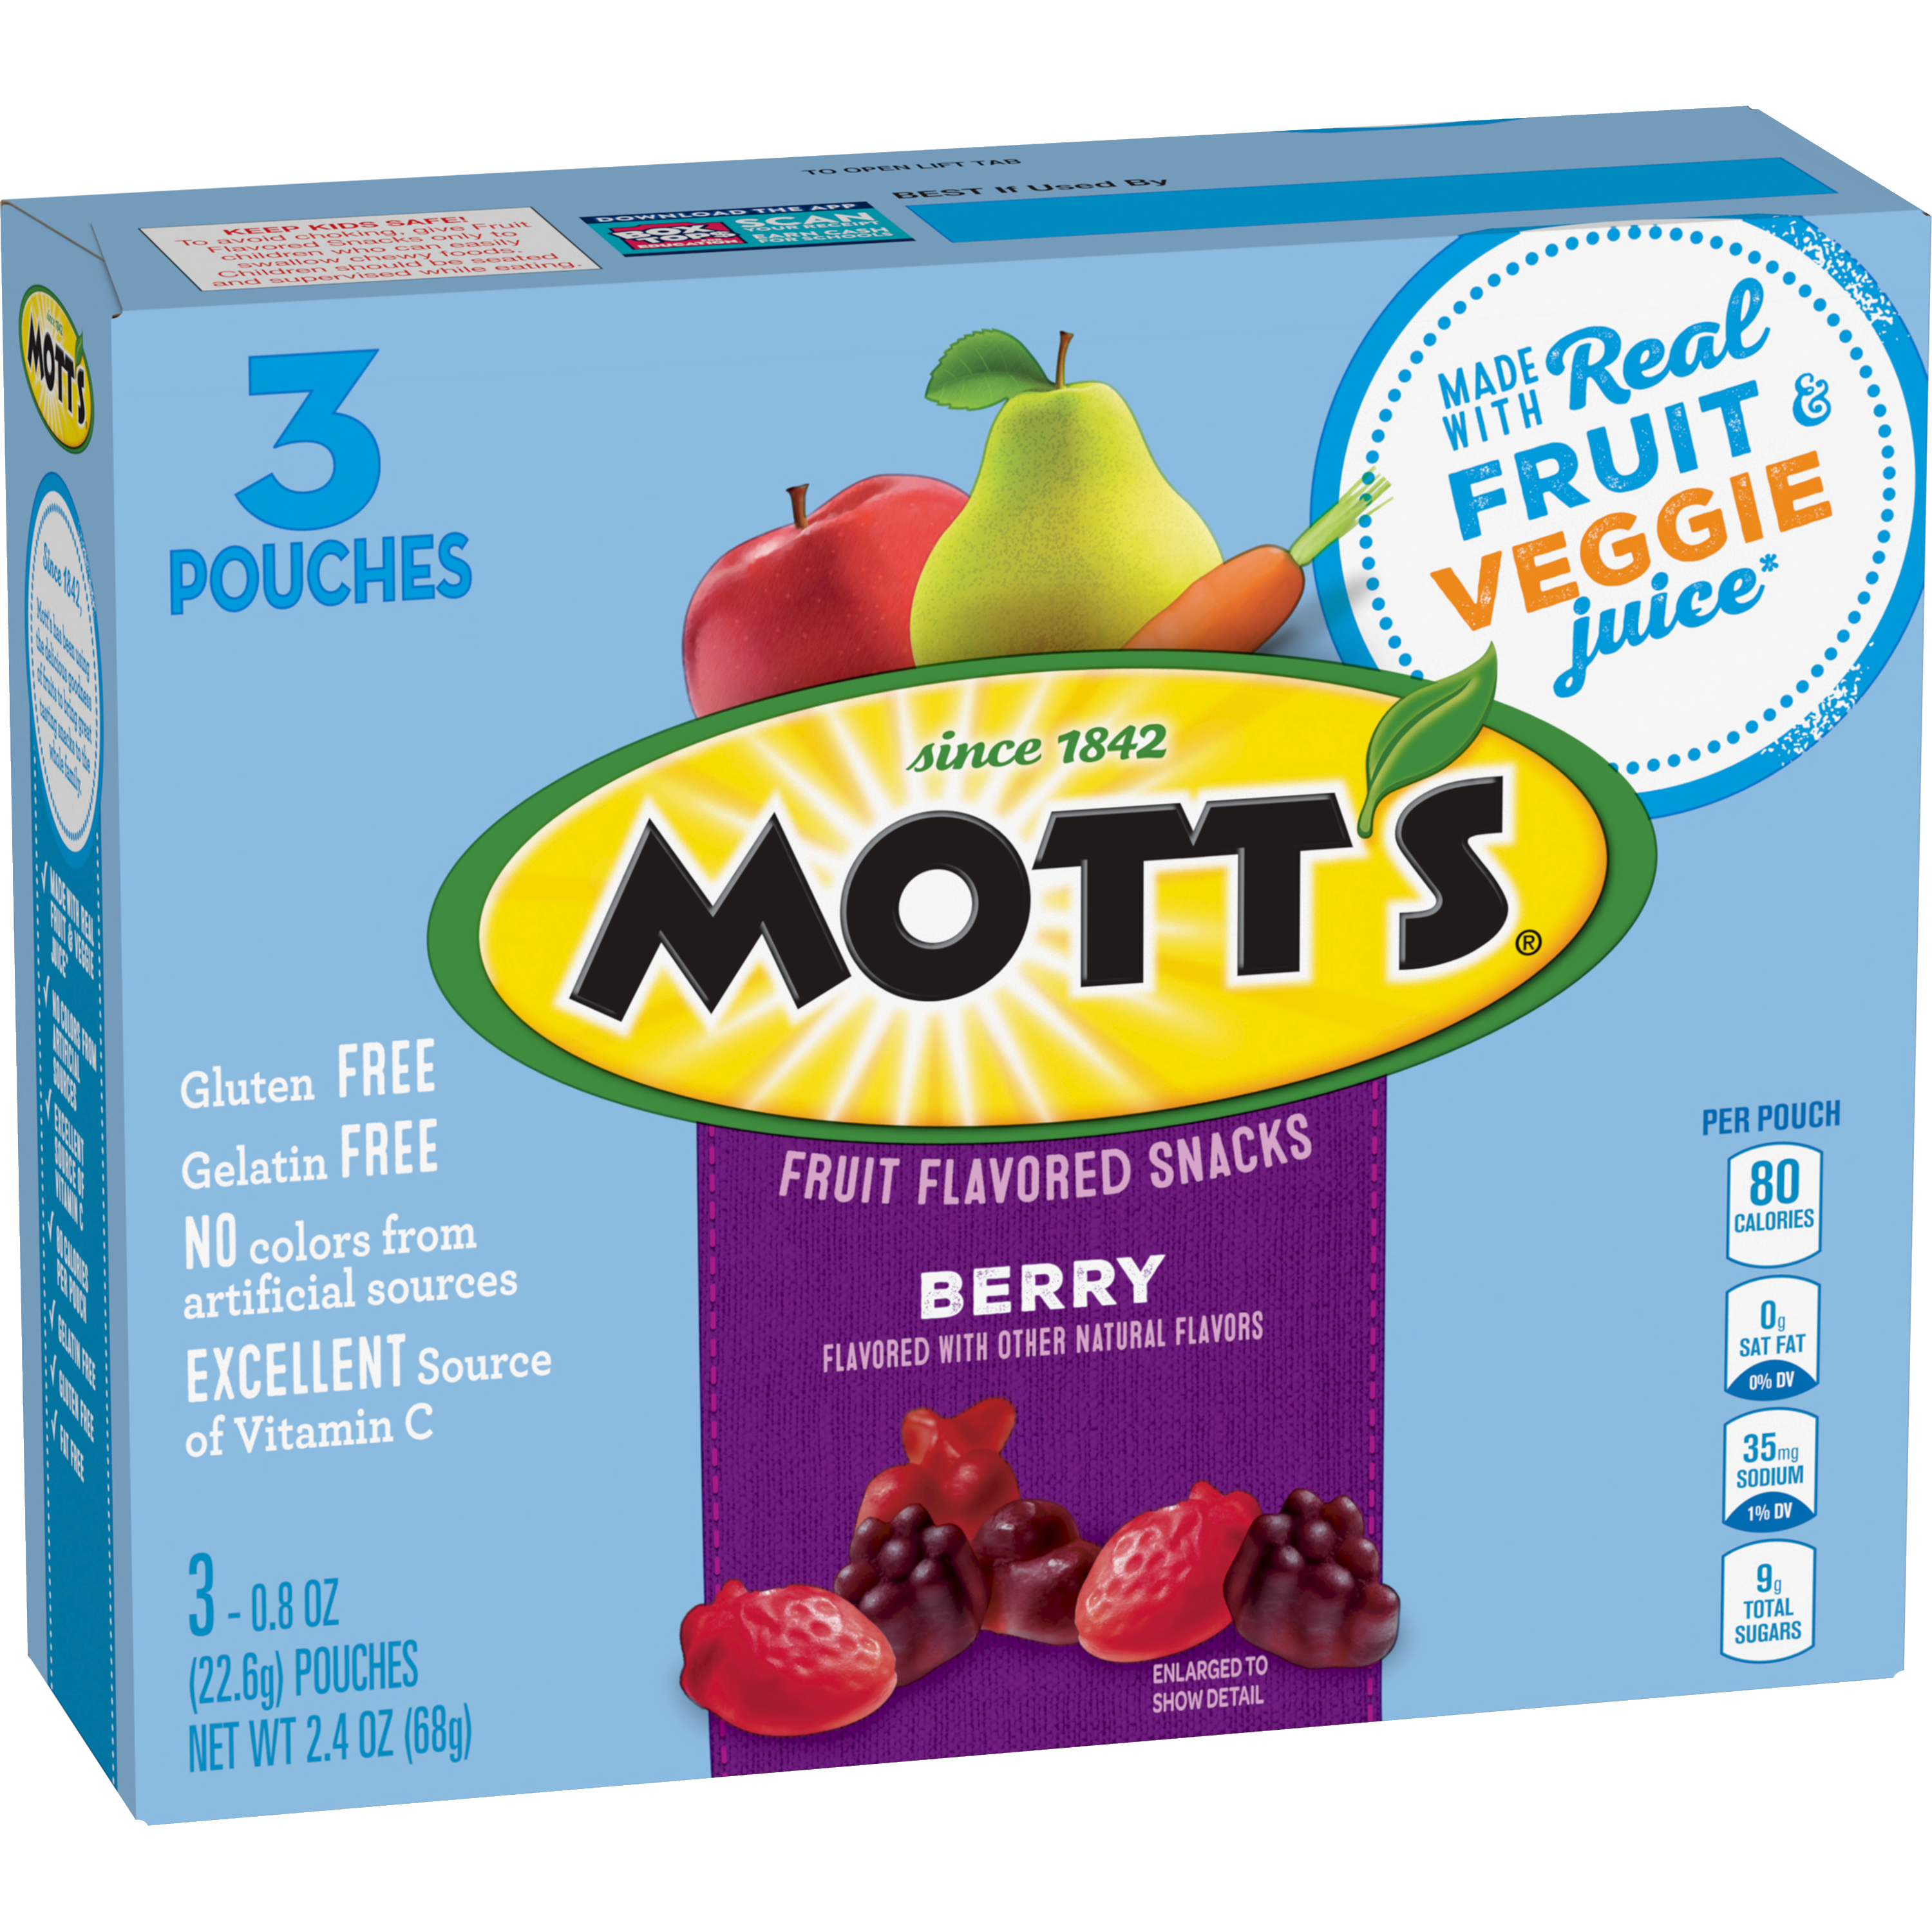 Mott's® Fruit Flavored Snacks - Berry